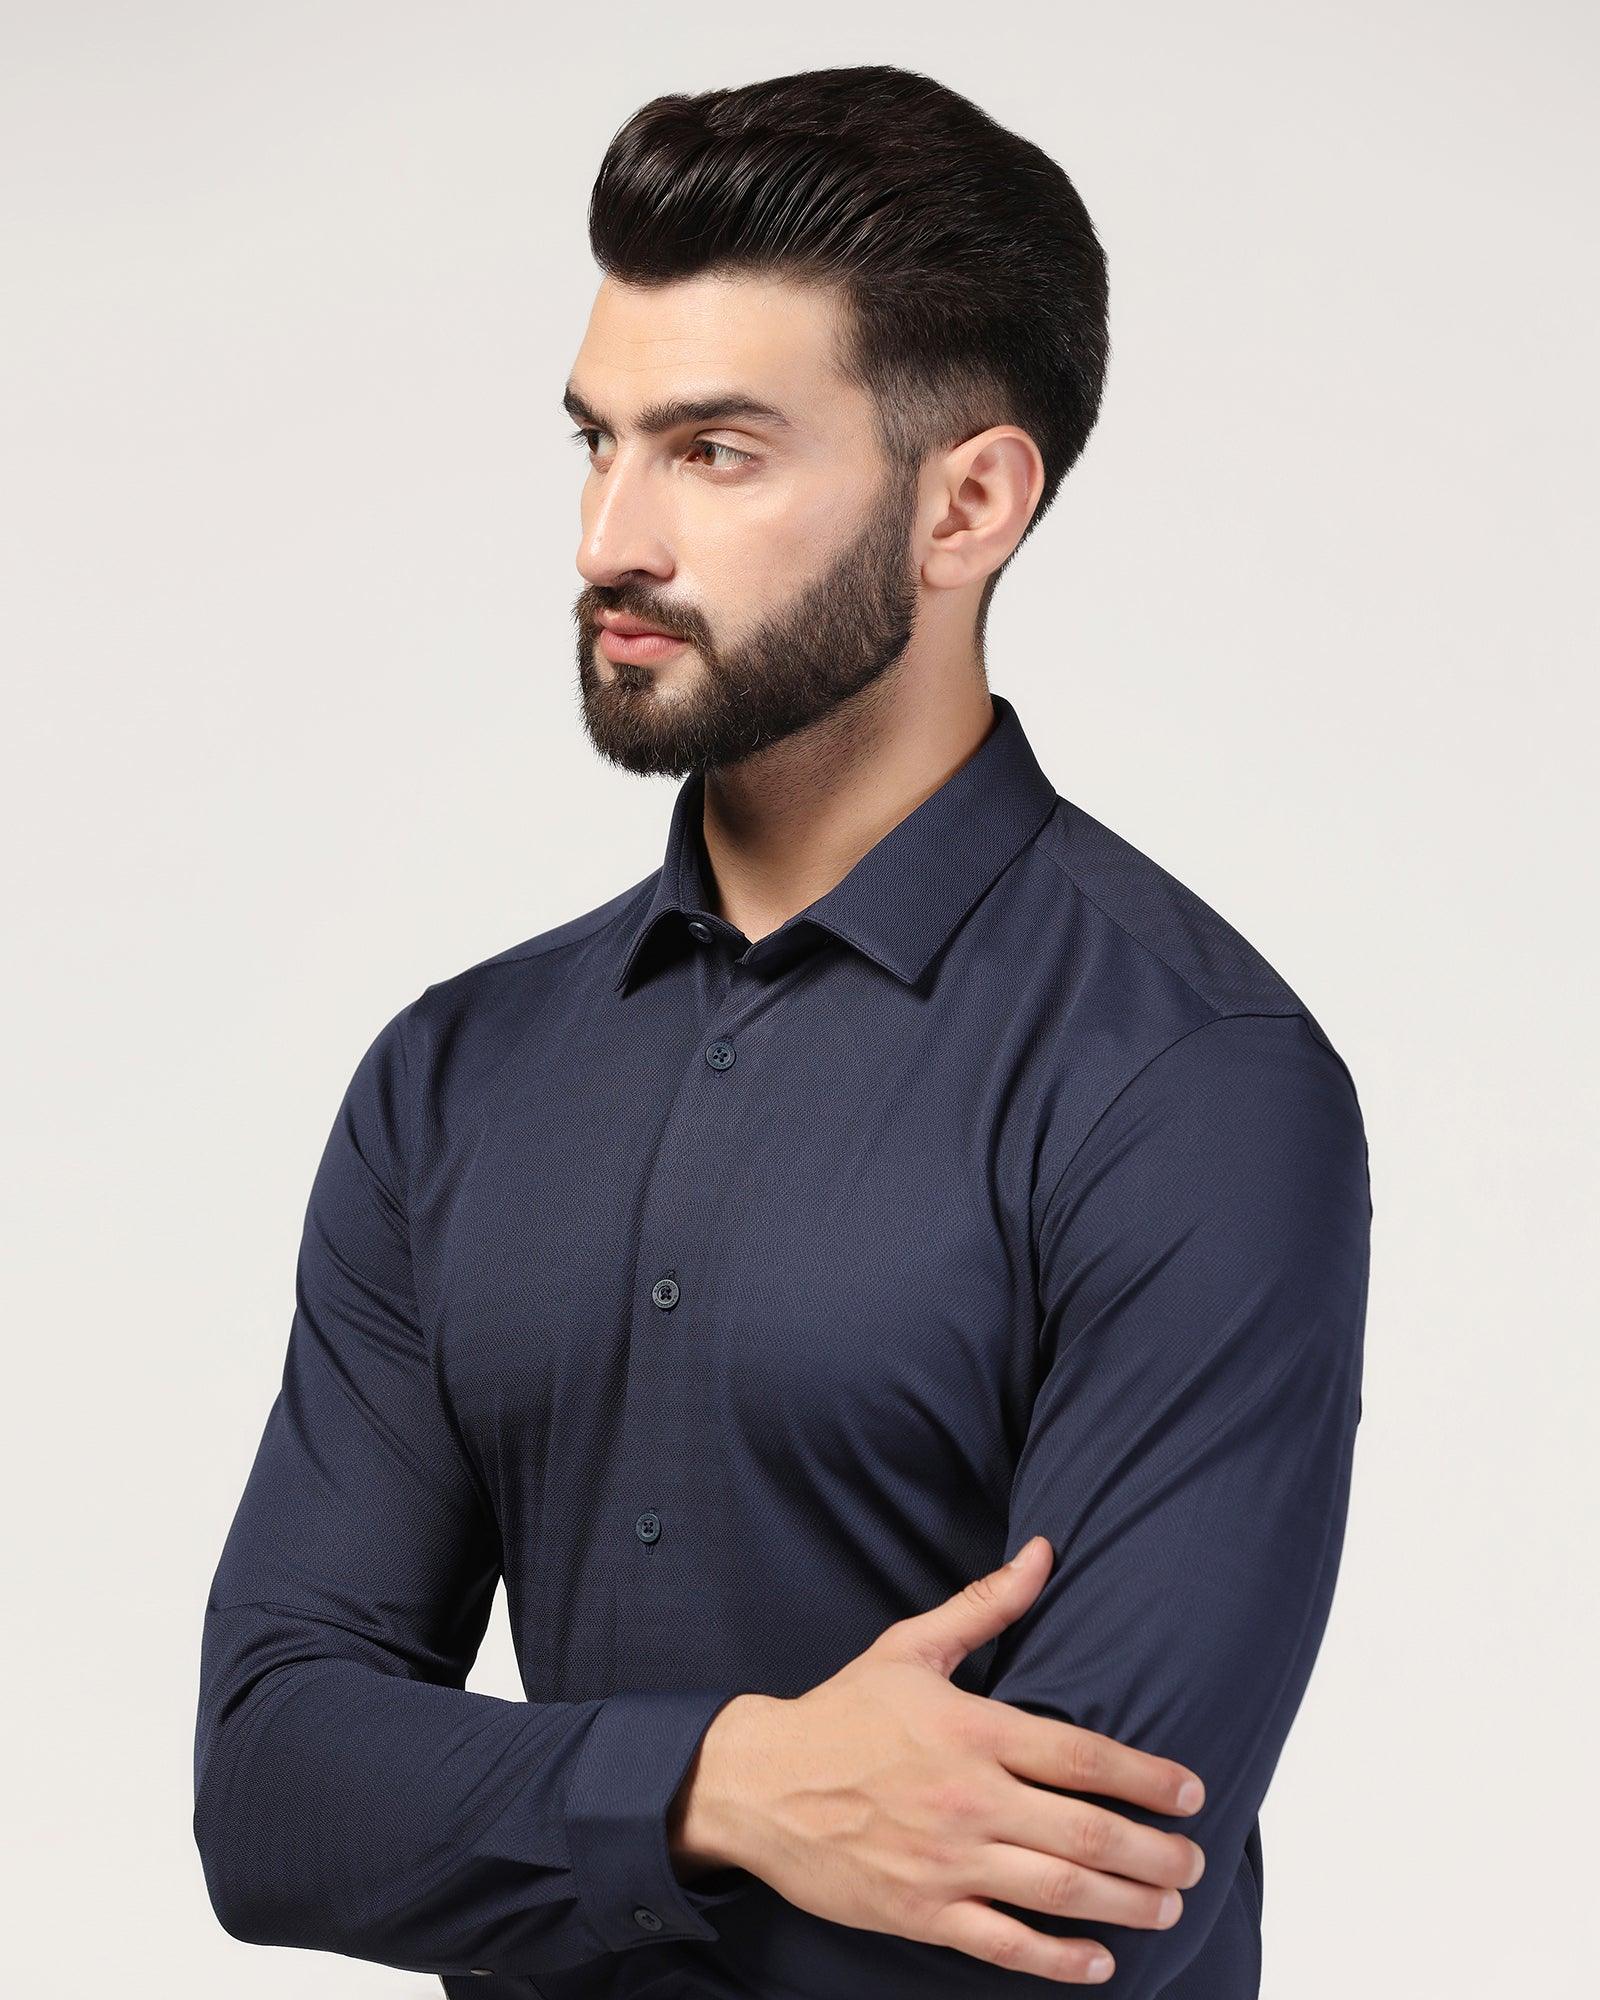 TechPro Formal Navy Stripe Shirt - Keish